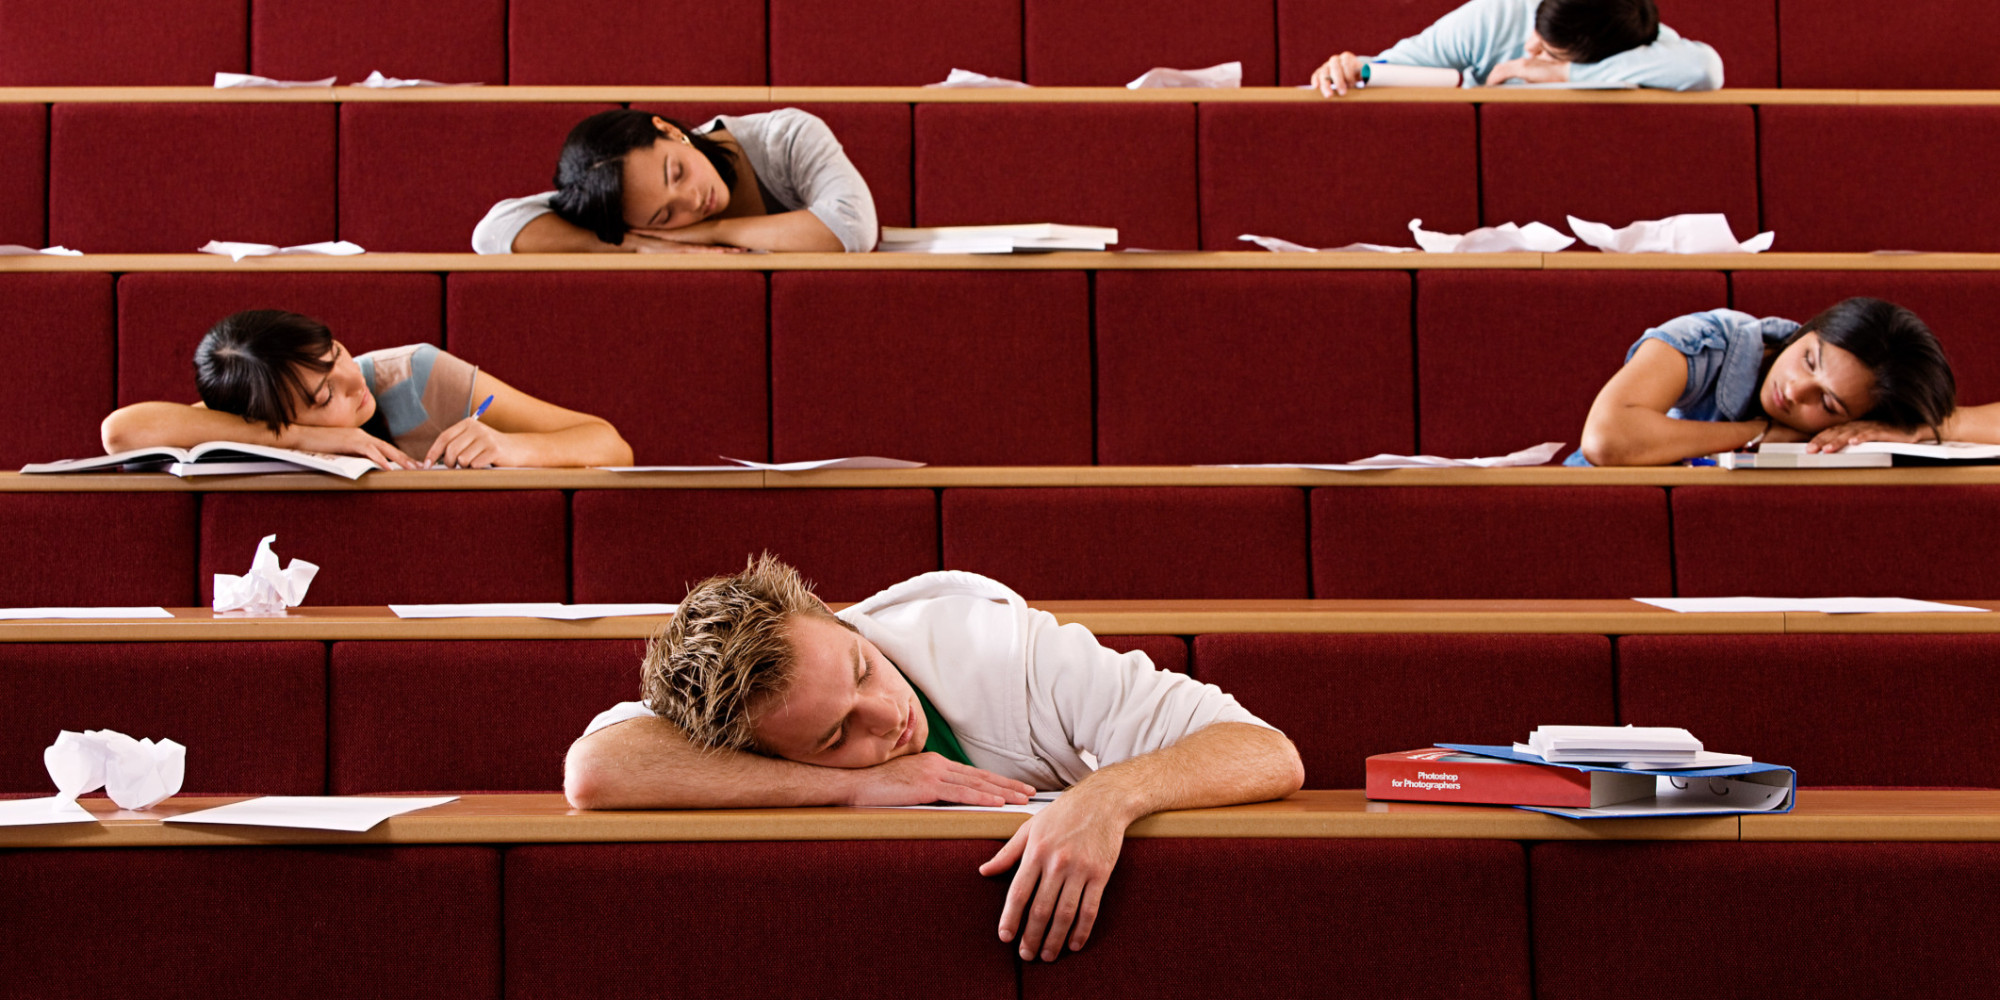 雖然每個人的睡眠類型和生活習慣略為不同，但現行的上課時間學生根本還沒進入最佳的學習狀態。